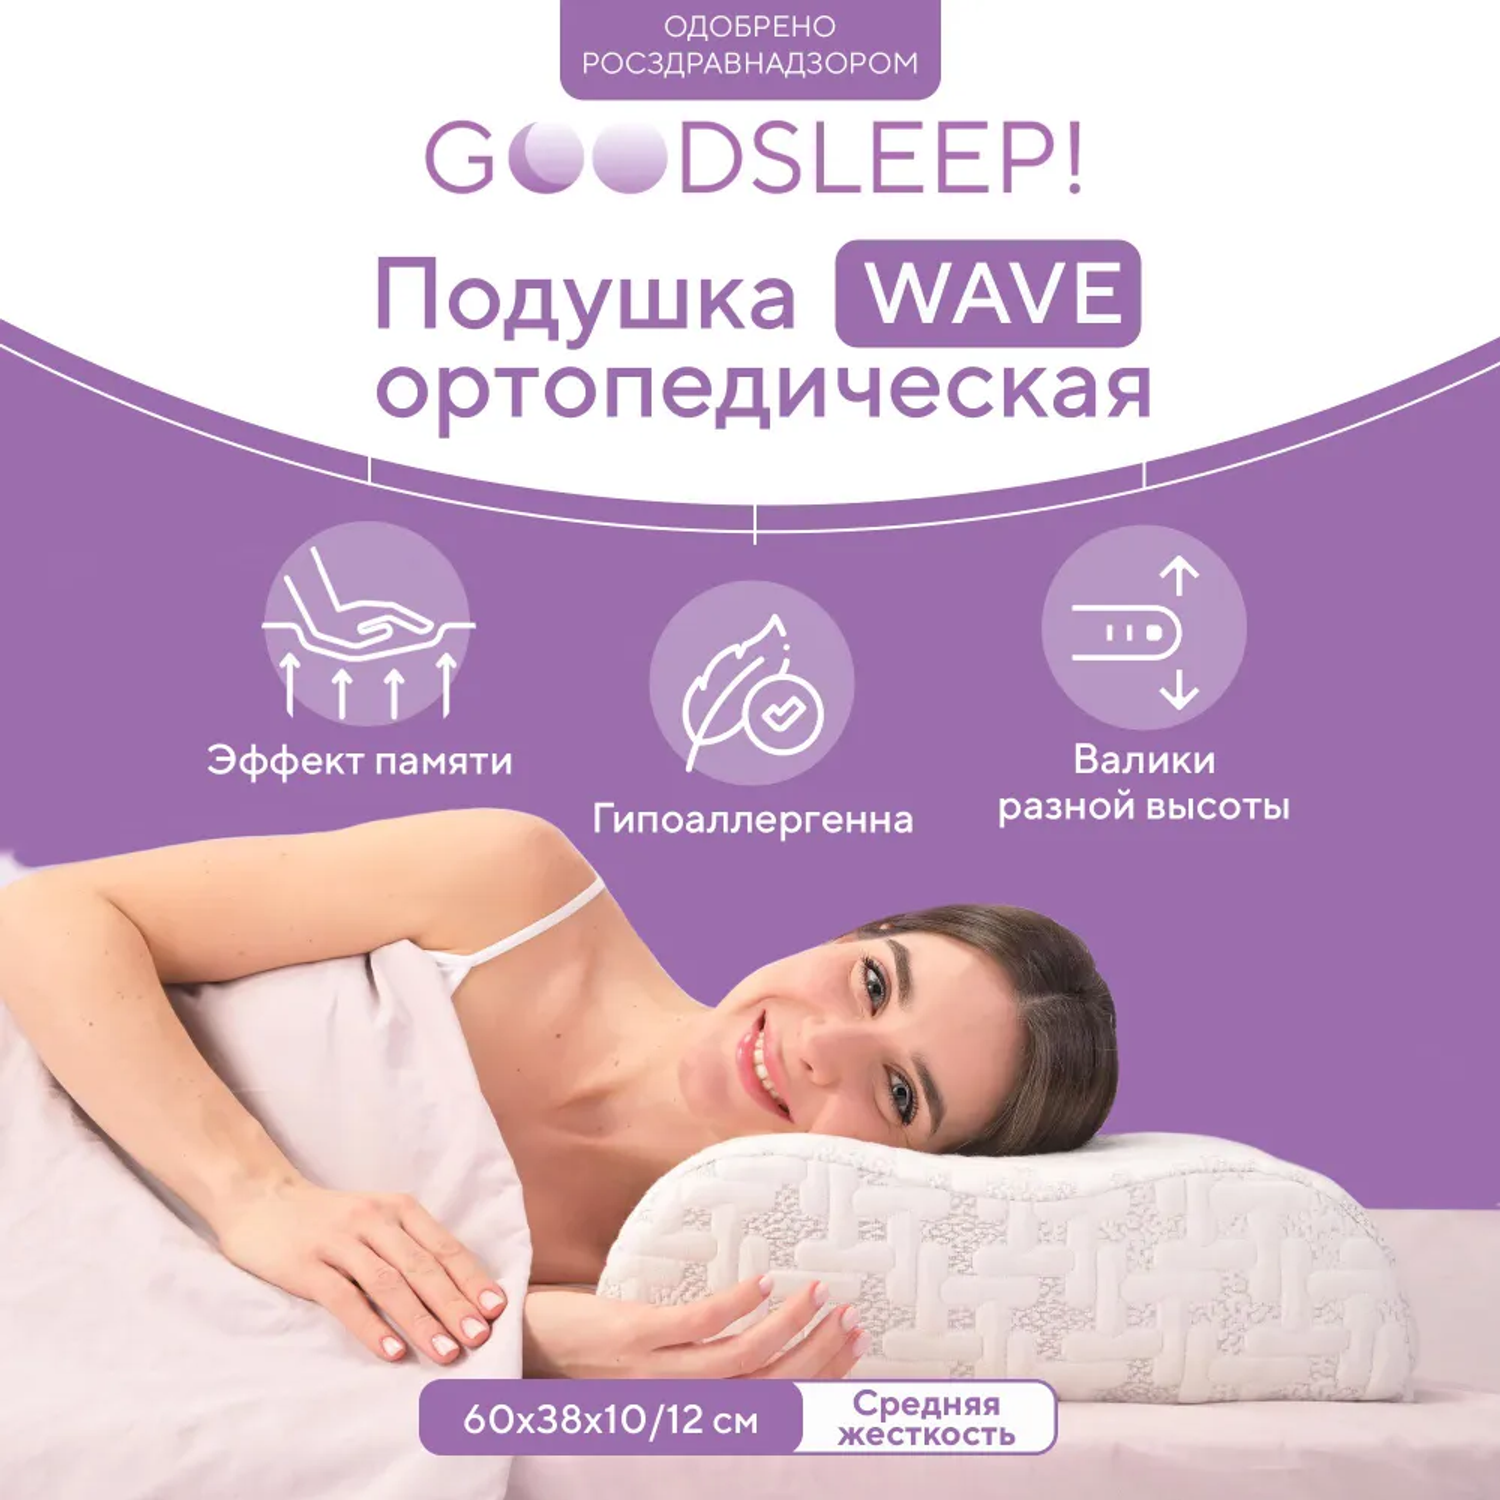 Ортопедическая подушка Goodsleep! для сна для взрослых с эффектом памяти - фото 2